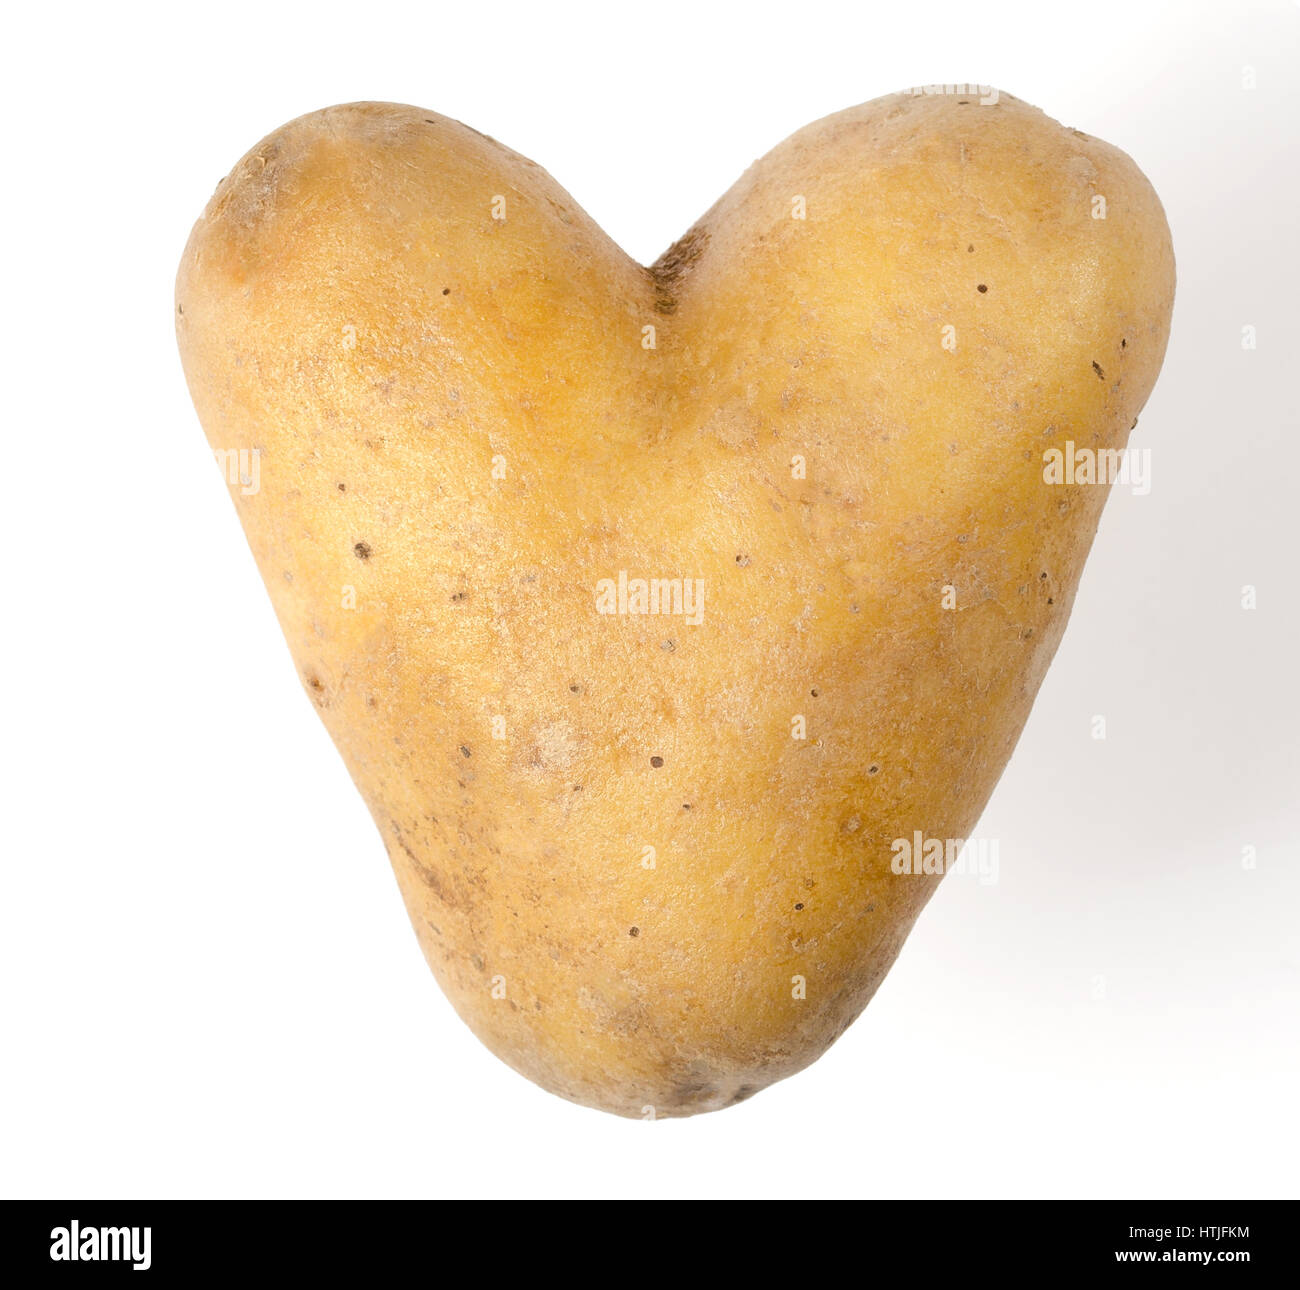 Herzförmige Kartoffeln auf weißem Hintergrund. Essbare Knolle von Nachtschatten Solanum Tuberosum, eine stärkehaltige Ernte. Isolierte Makrofoto Essen Nahaufnahme von oben. Stockfoto